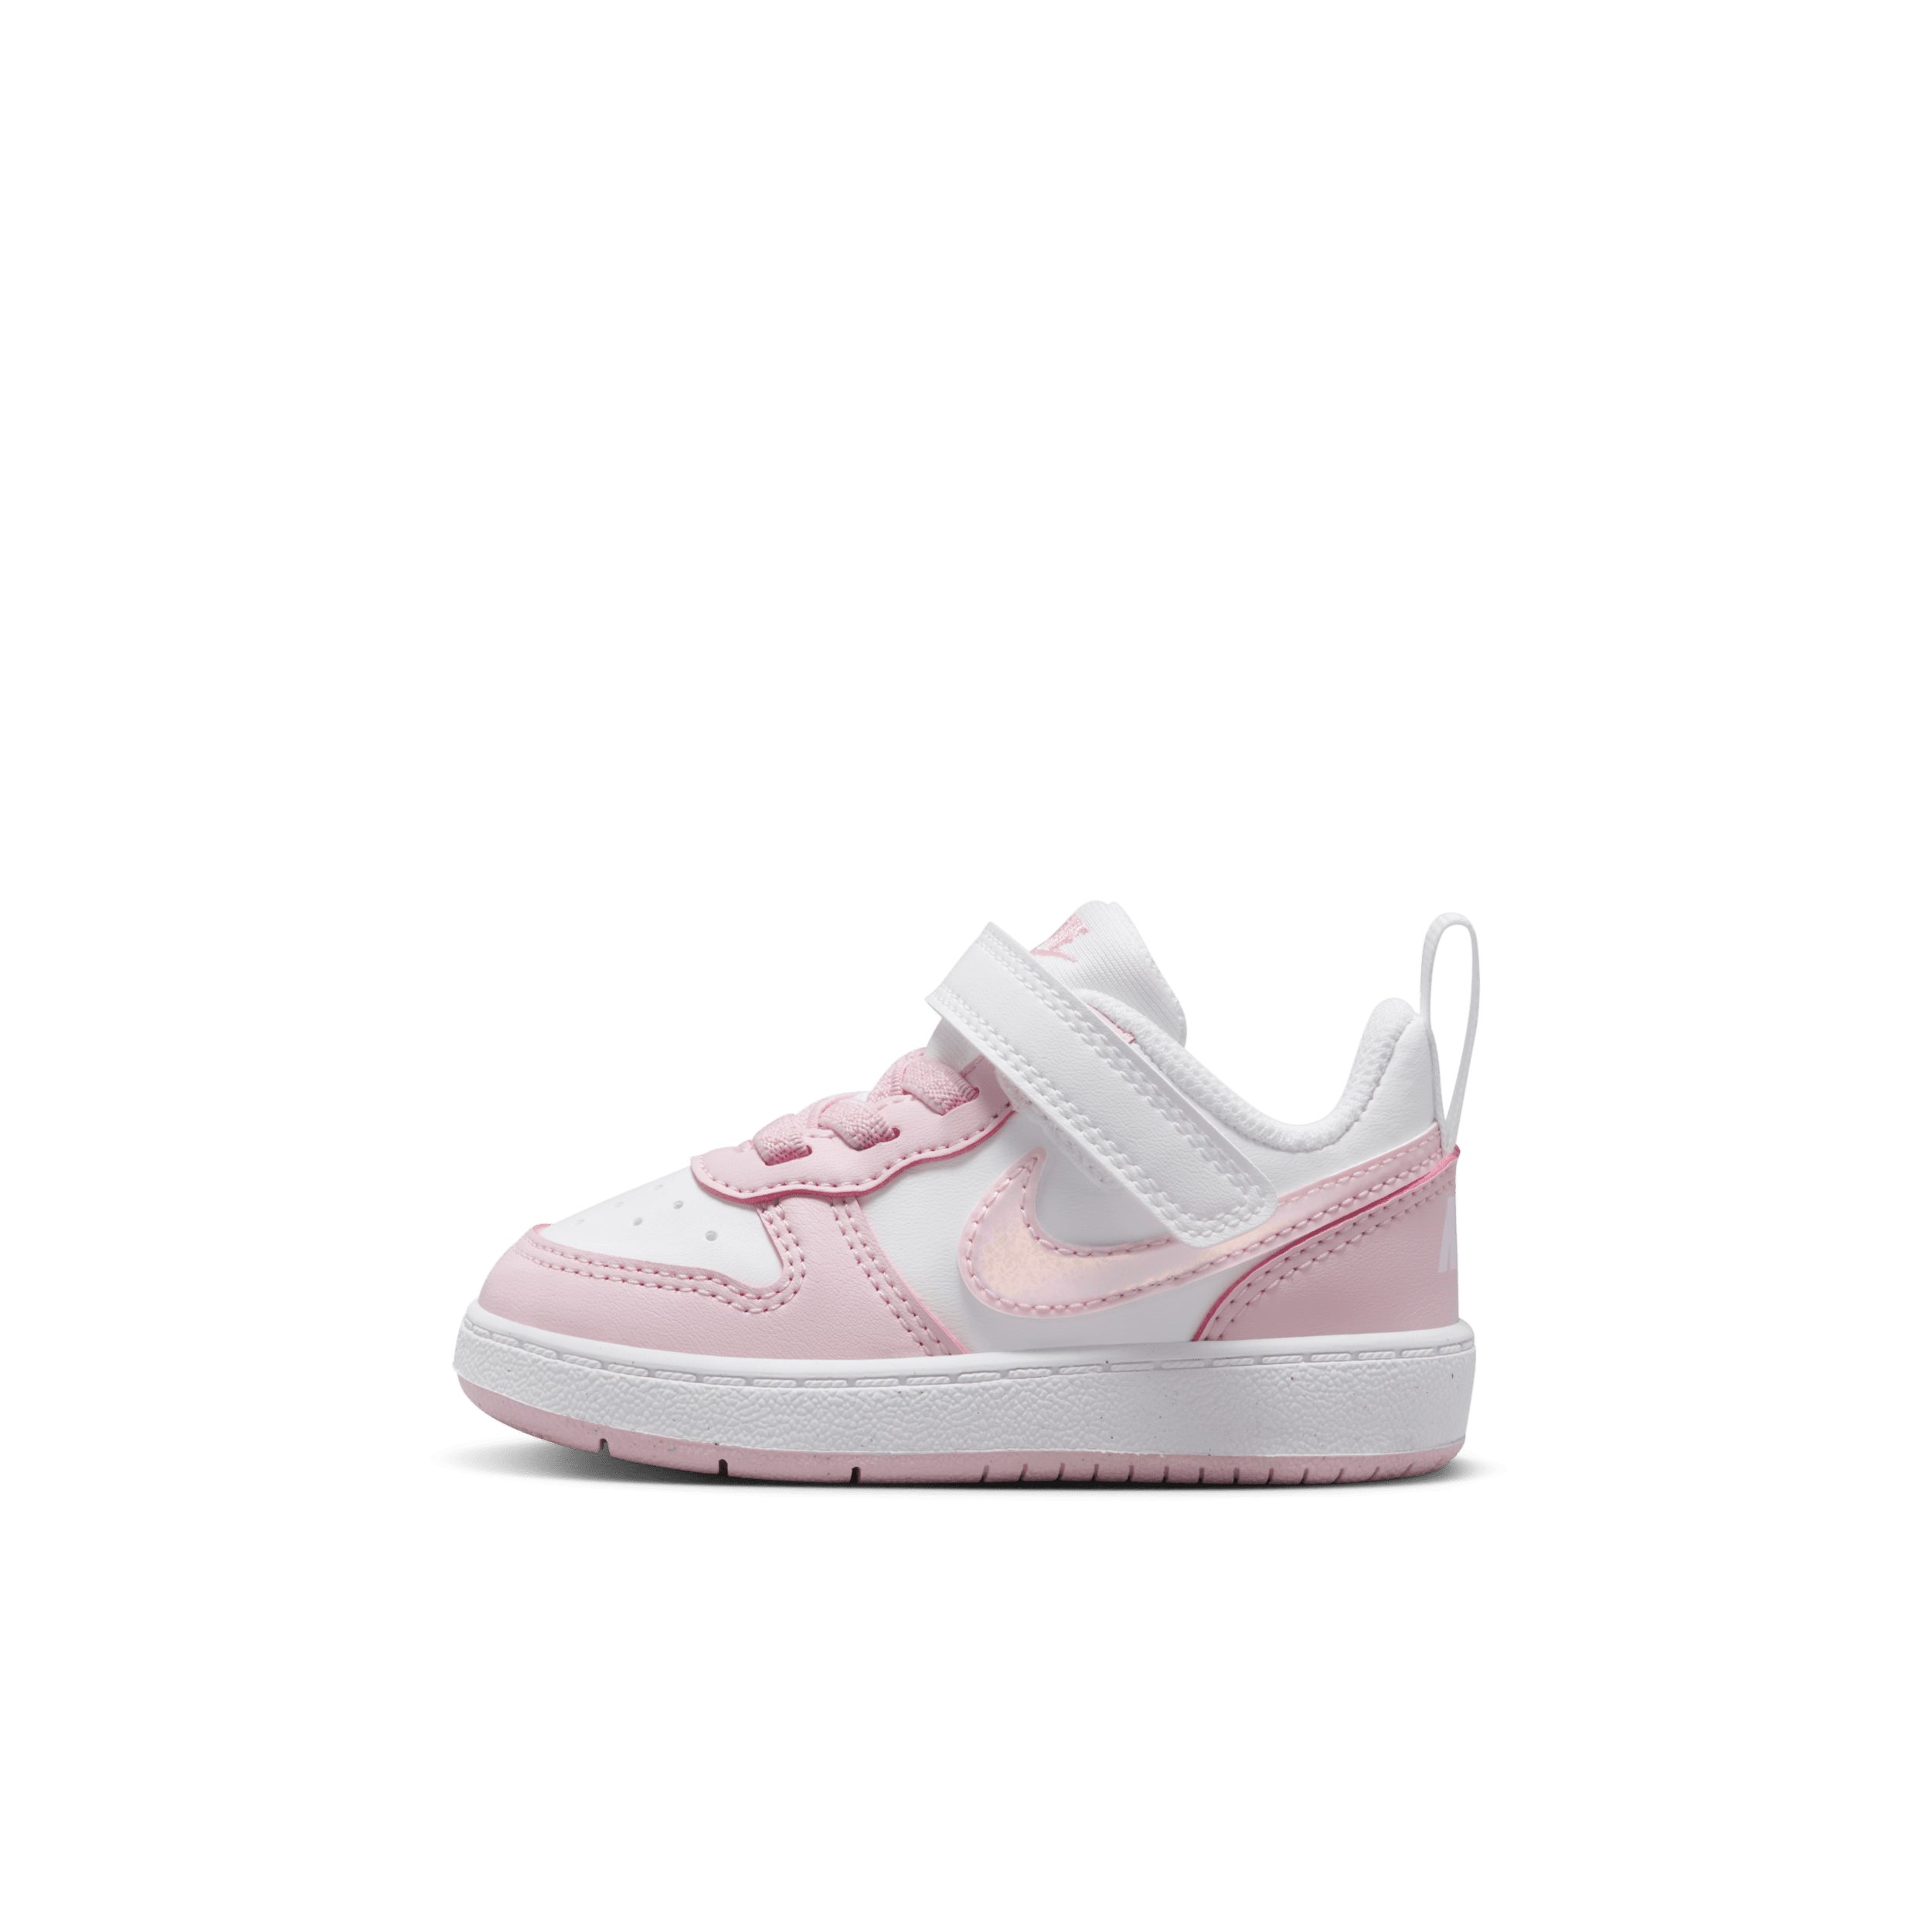 Nike Court Borough Low Recraft-sko til babyer/småbørn - hvid